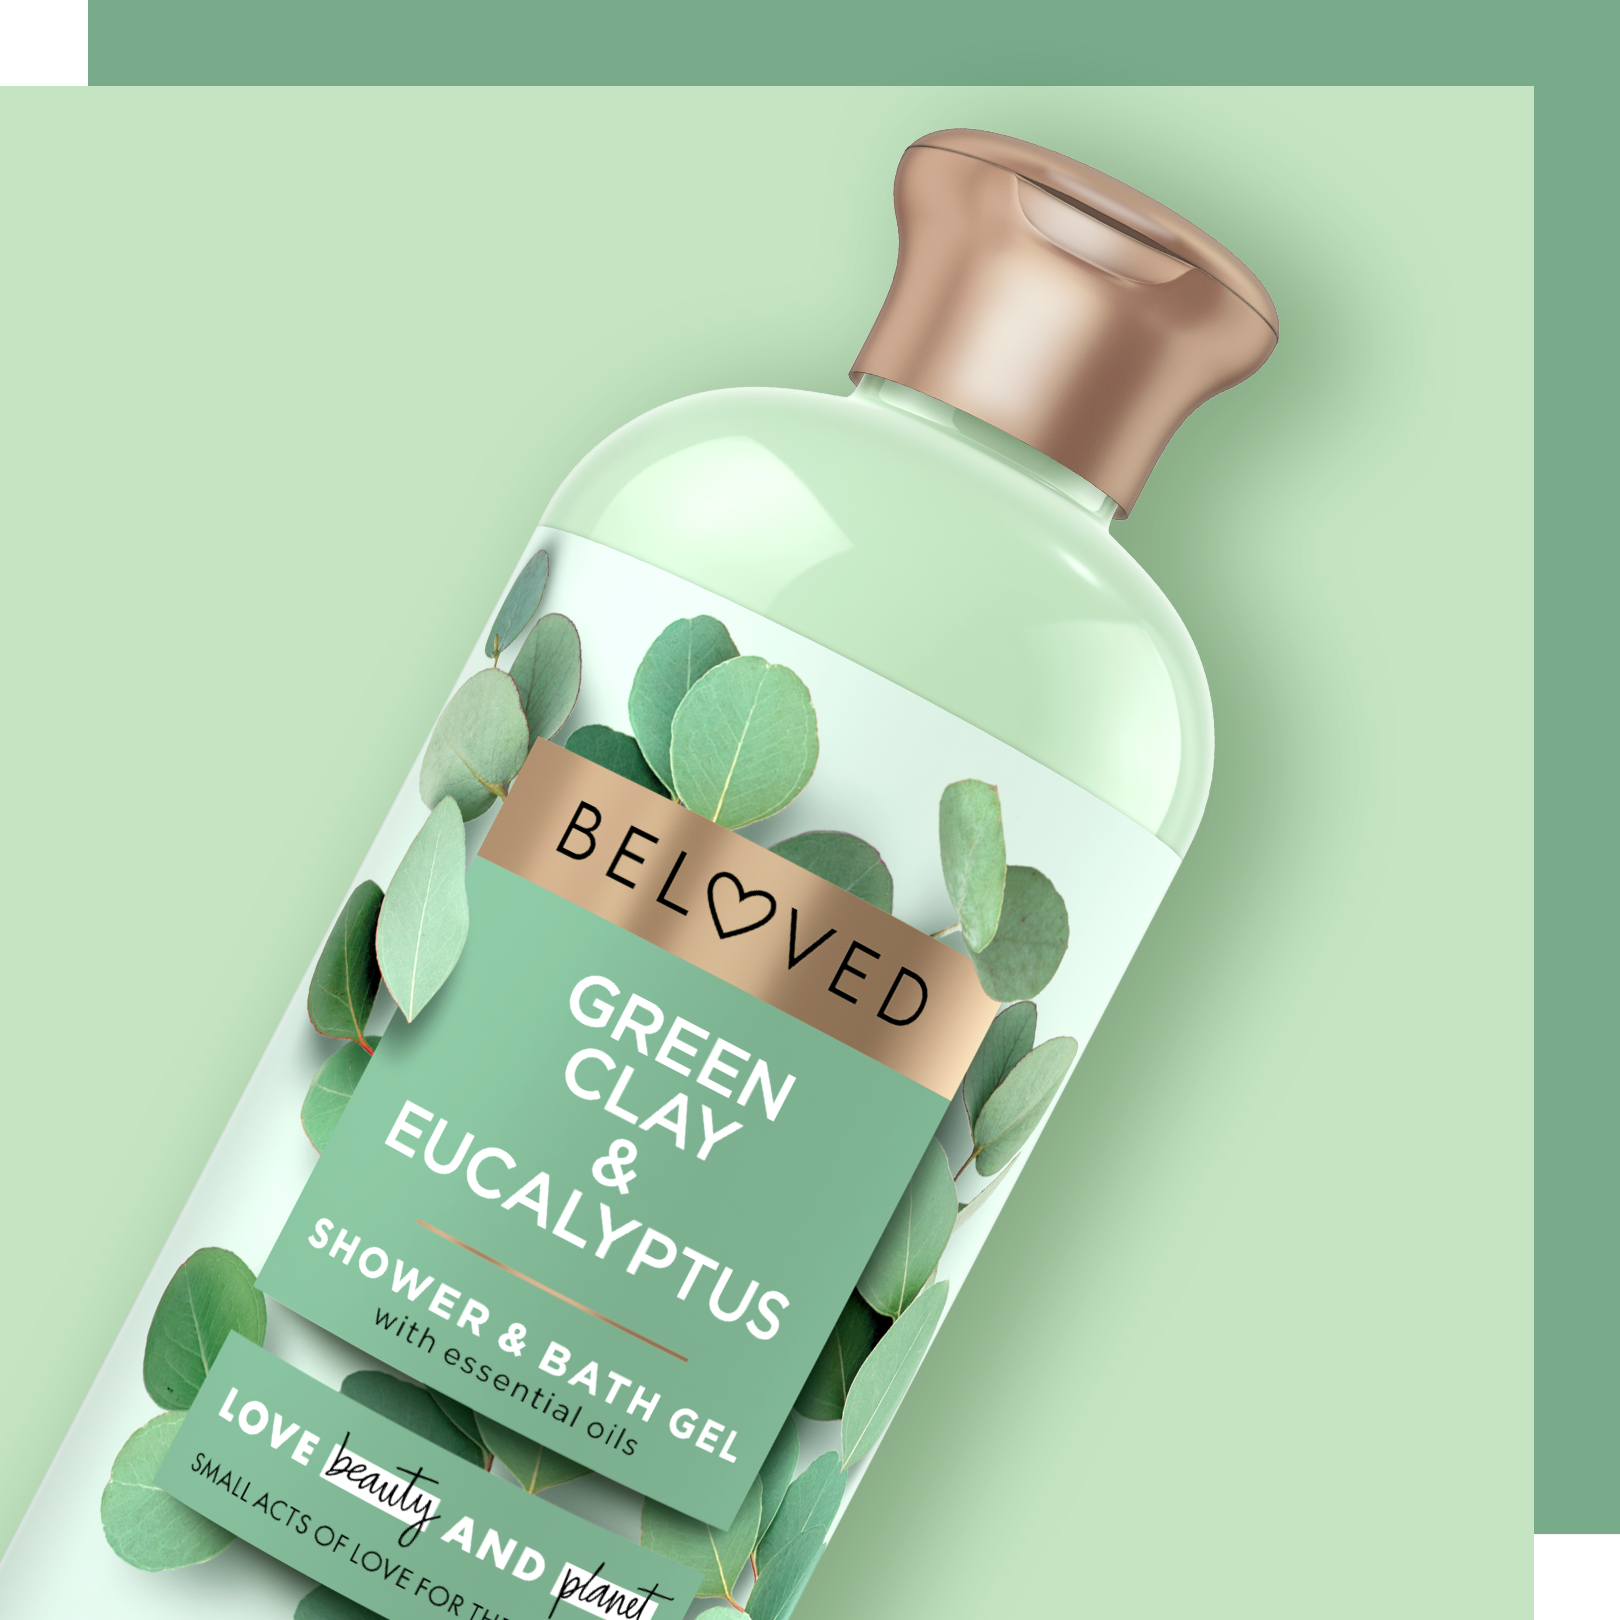 Green Clay & Eucalyptus Shower & Bath gel